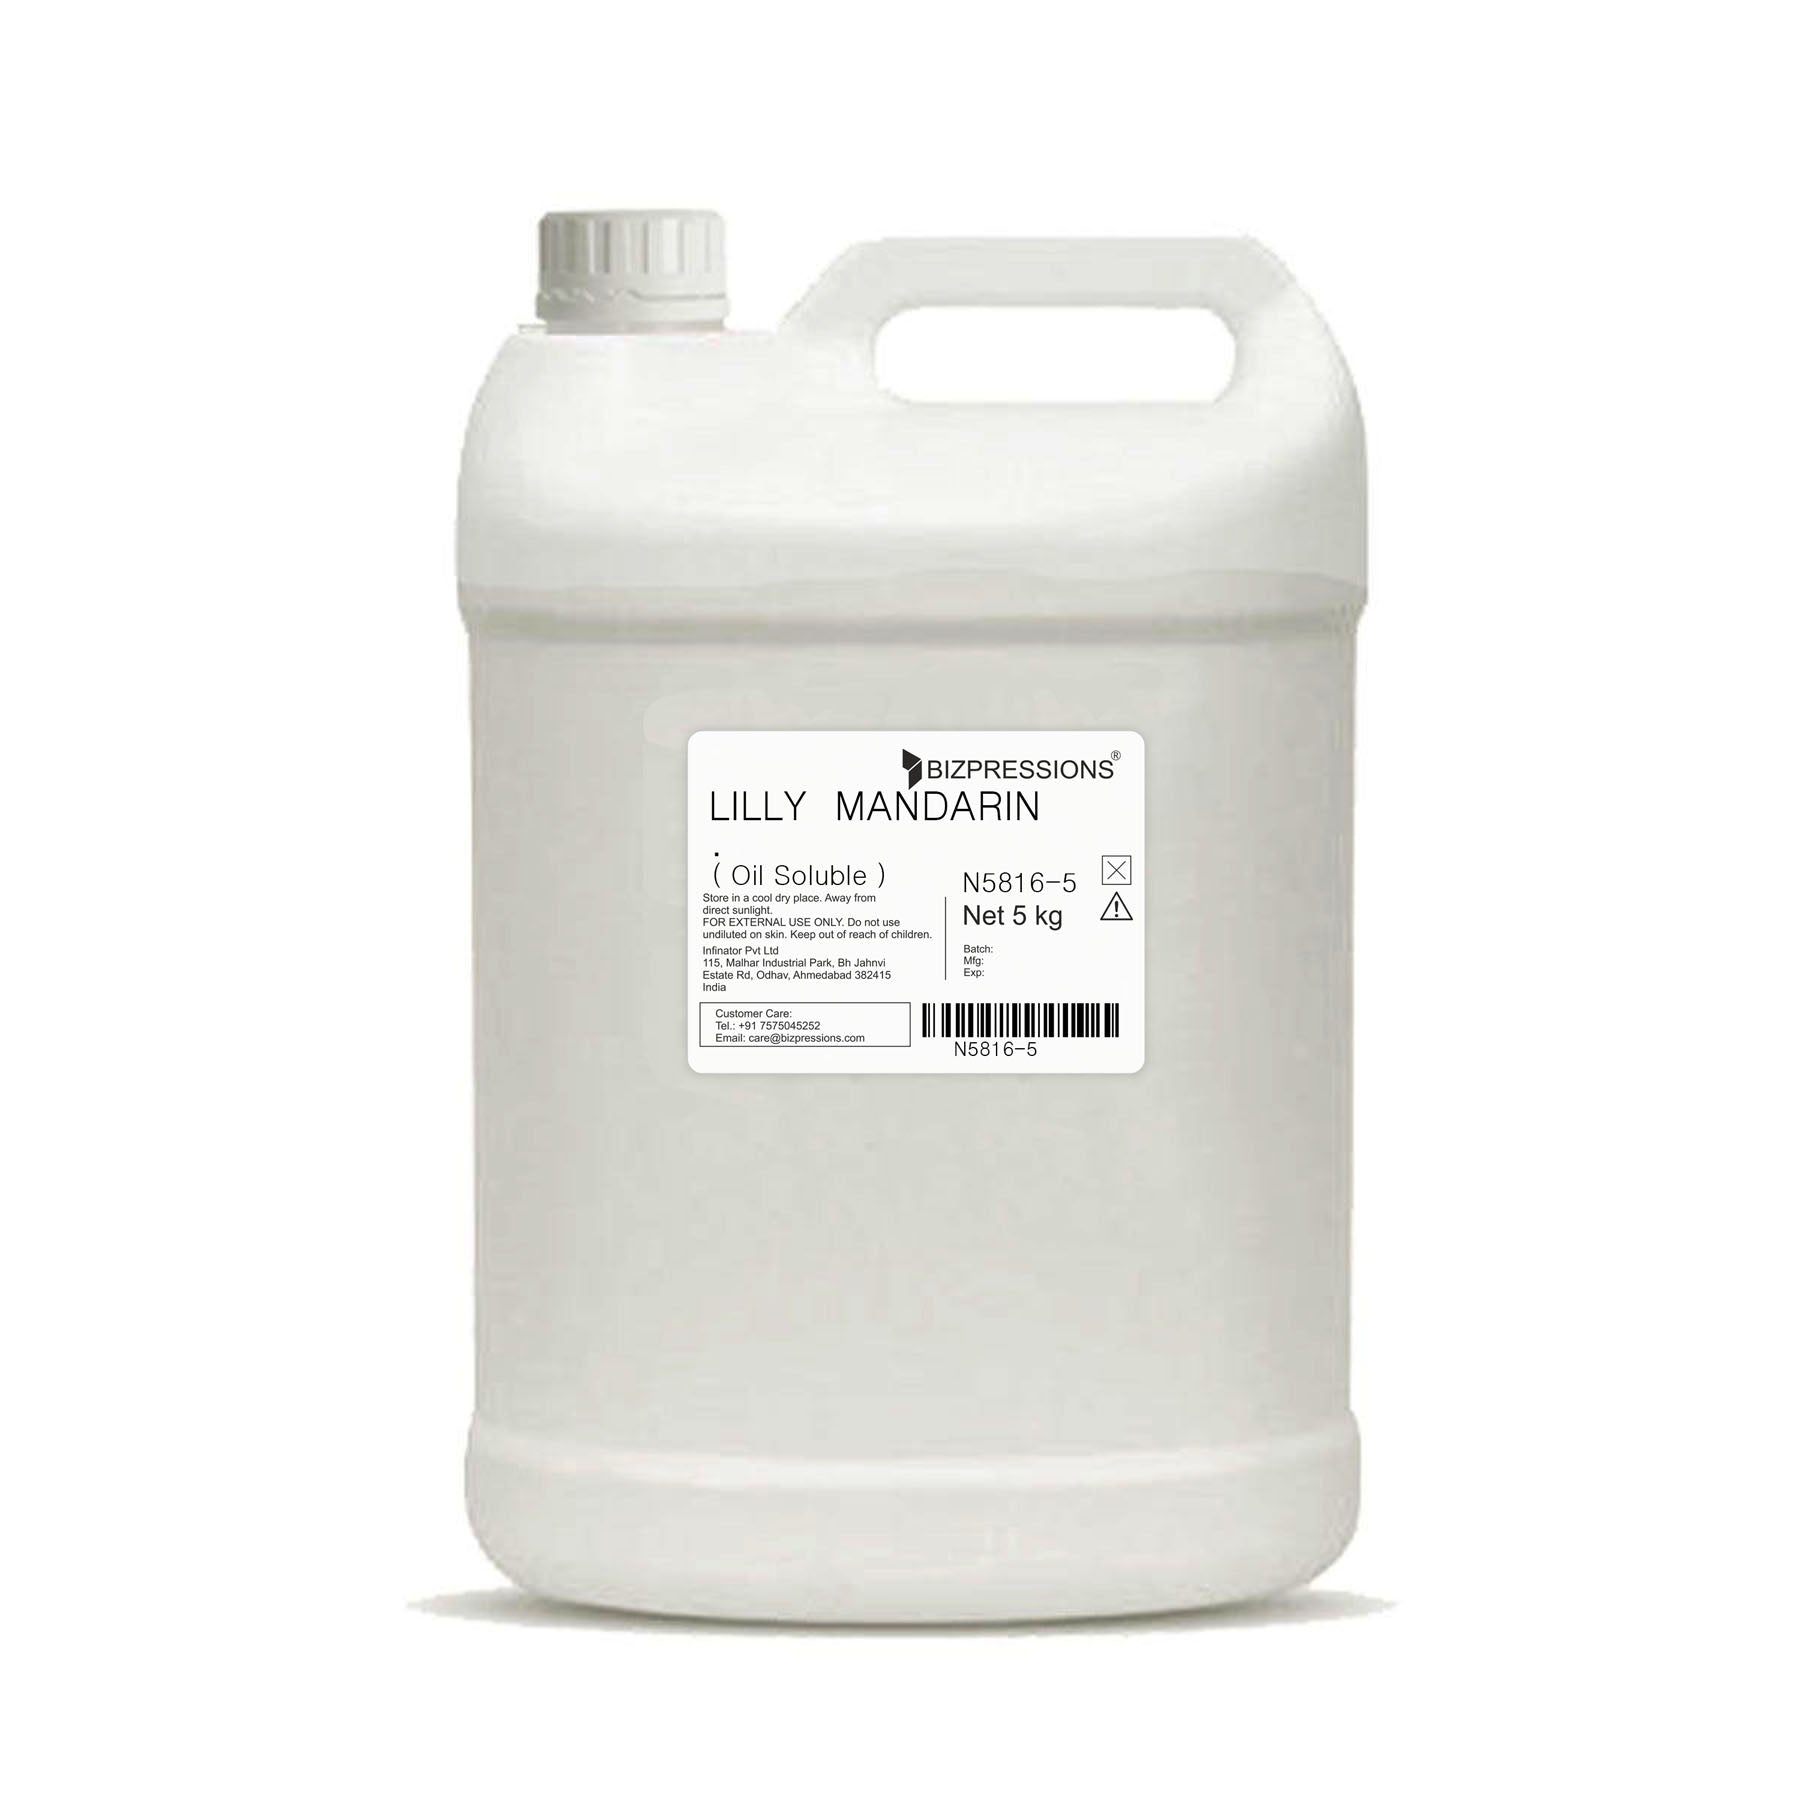 LILLY MANDARIN - Fragrance ( Oil Soluble ) - 5 kg